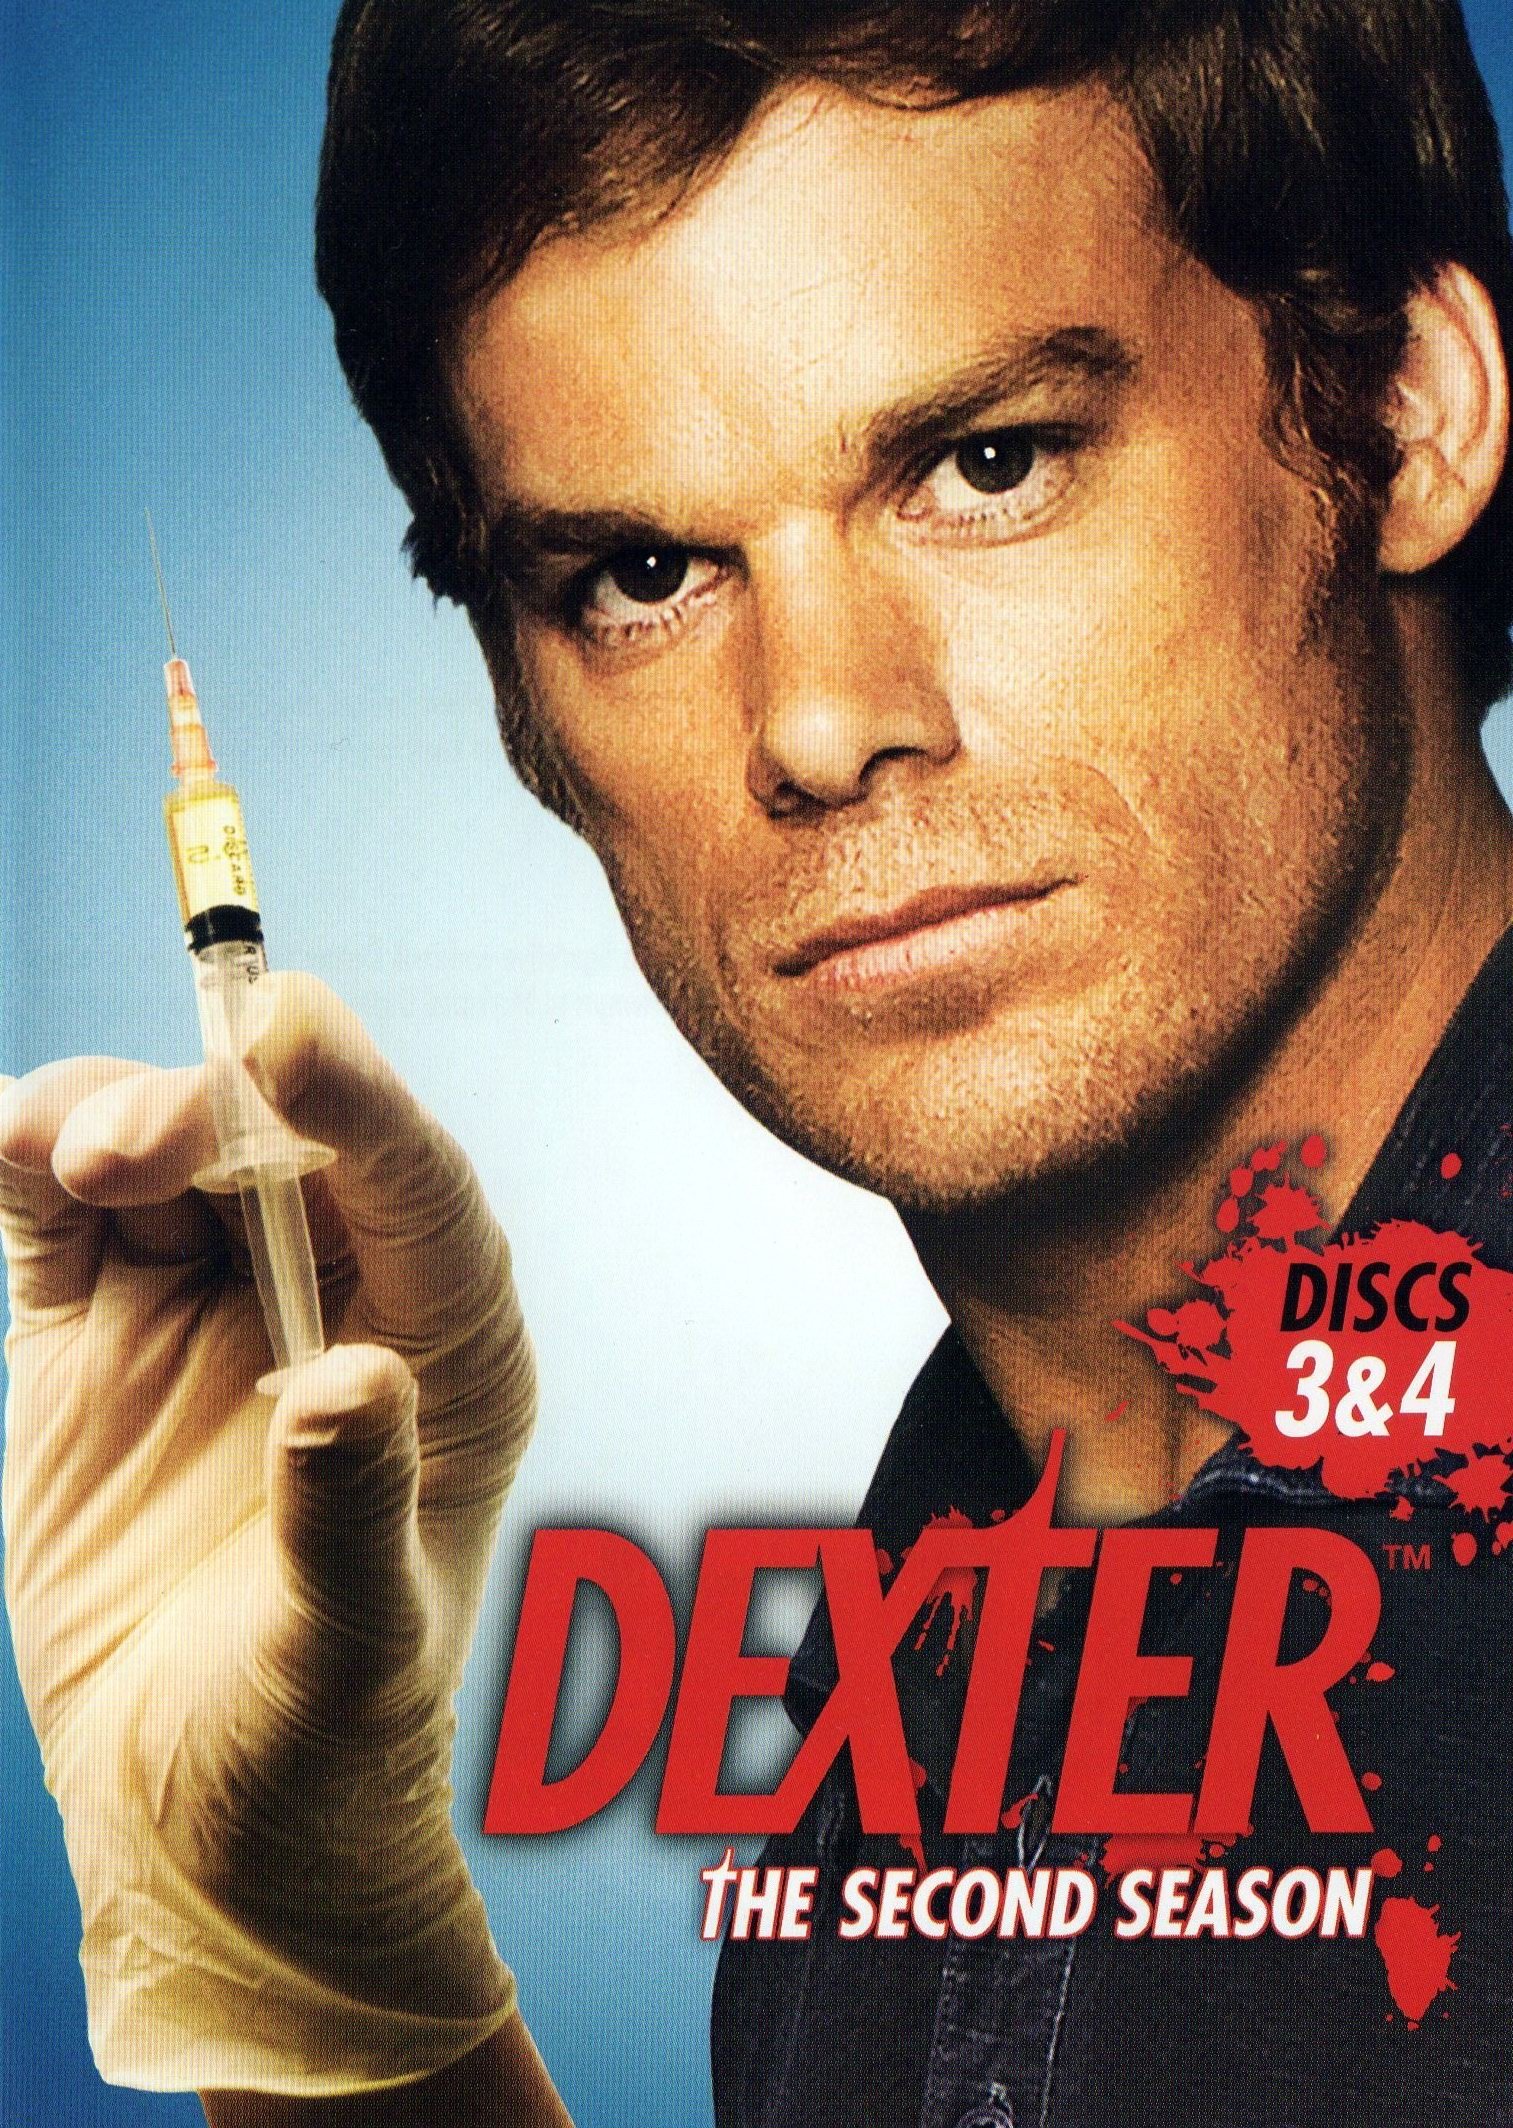 Dexter 2006 Poster 5847